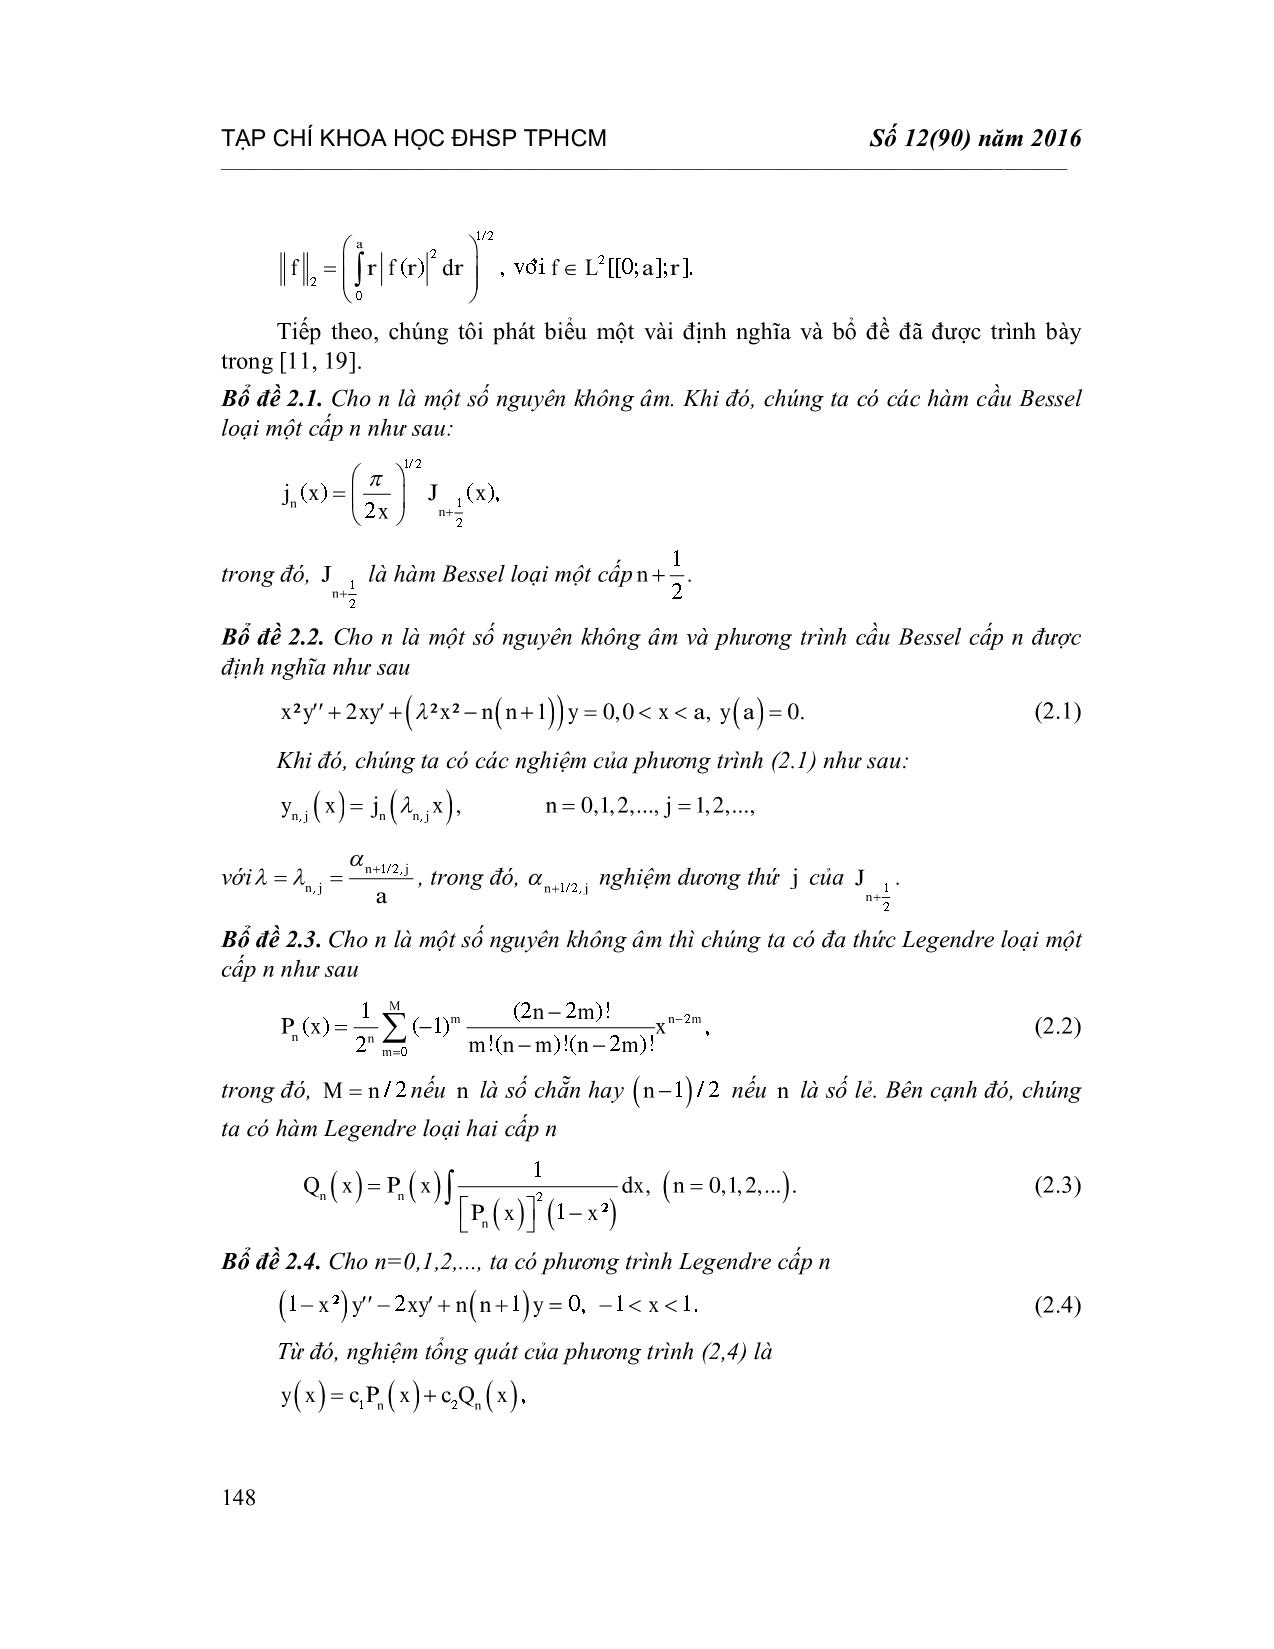 Chỉnh hóa bài toán nhiệt ngược với hệ số phụ thuộc thời gian trong tọa độ cầu trang 4